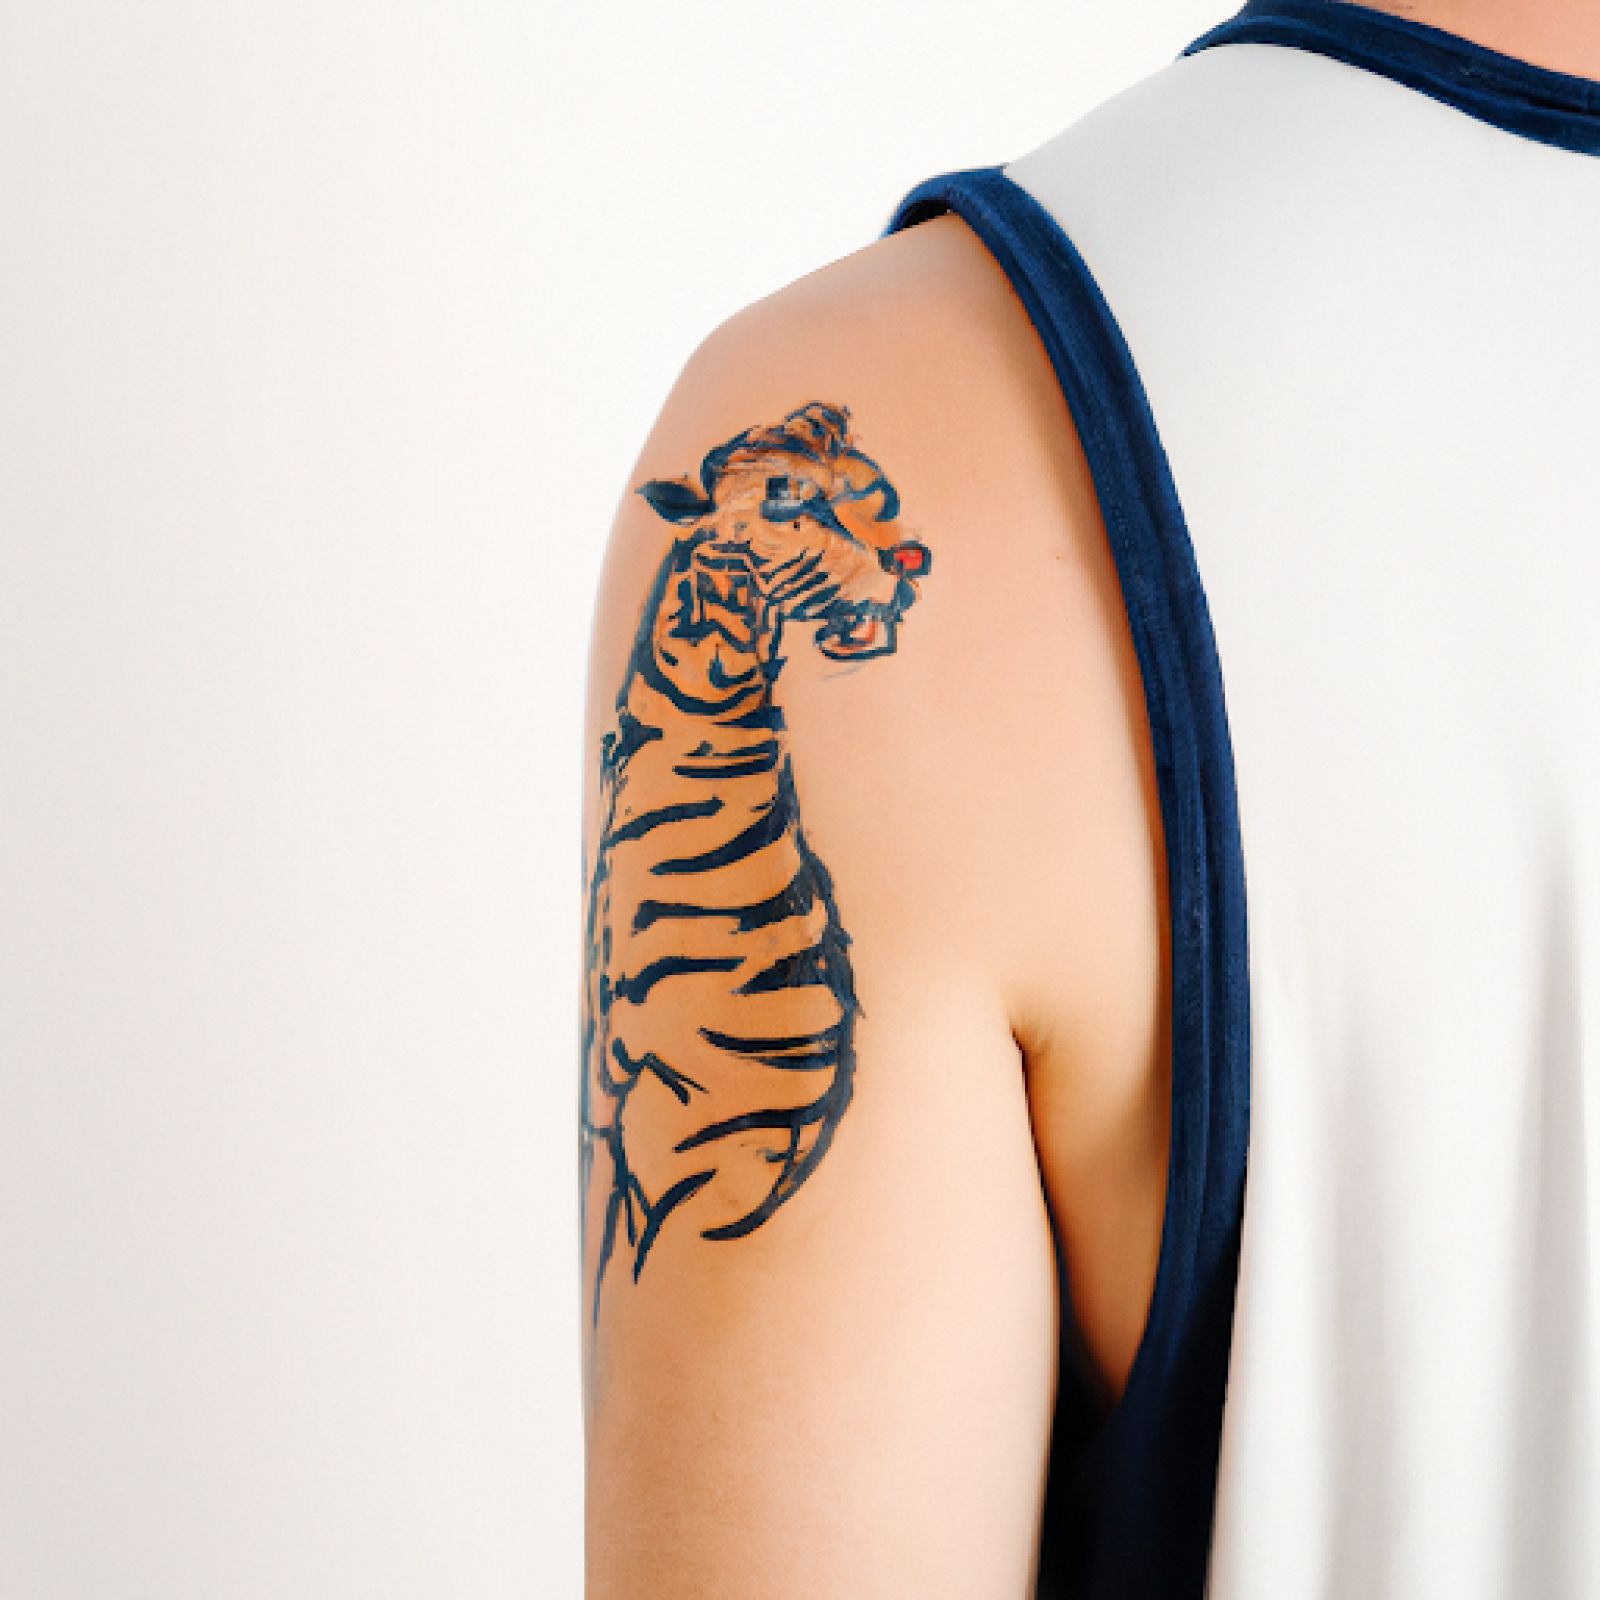 Tiger tattoo on shoulder for men